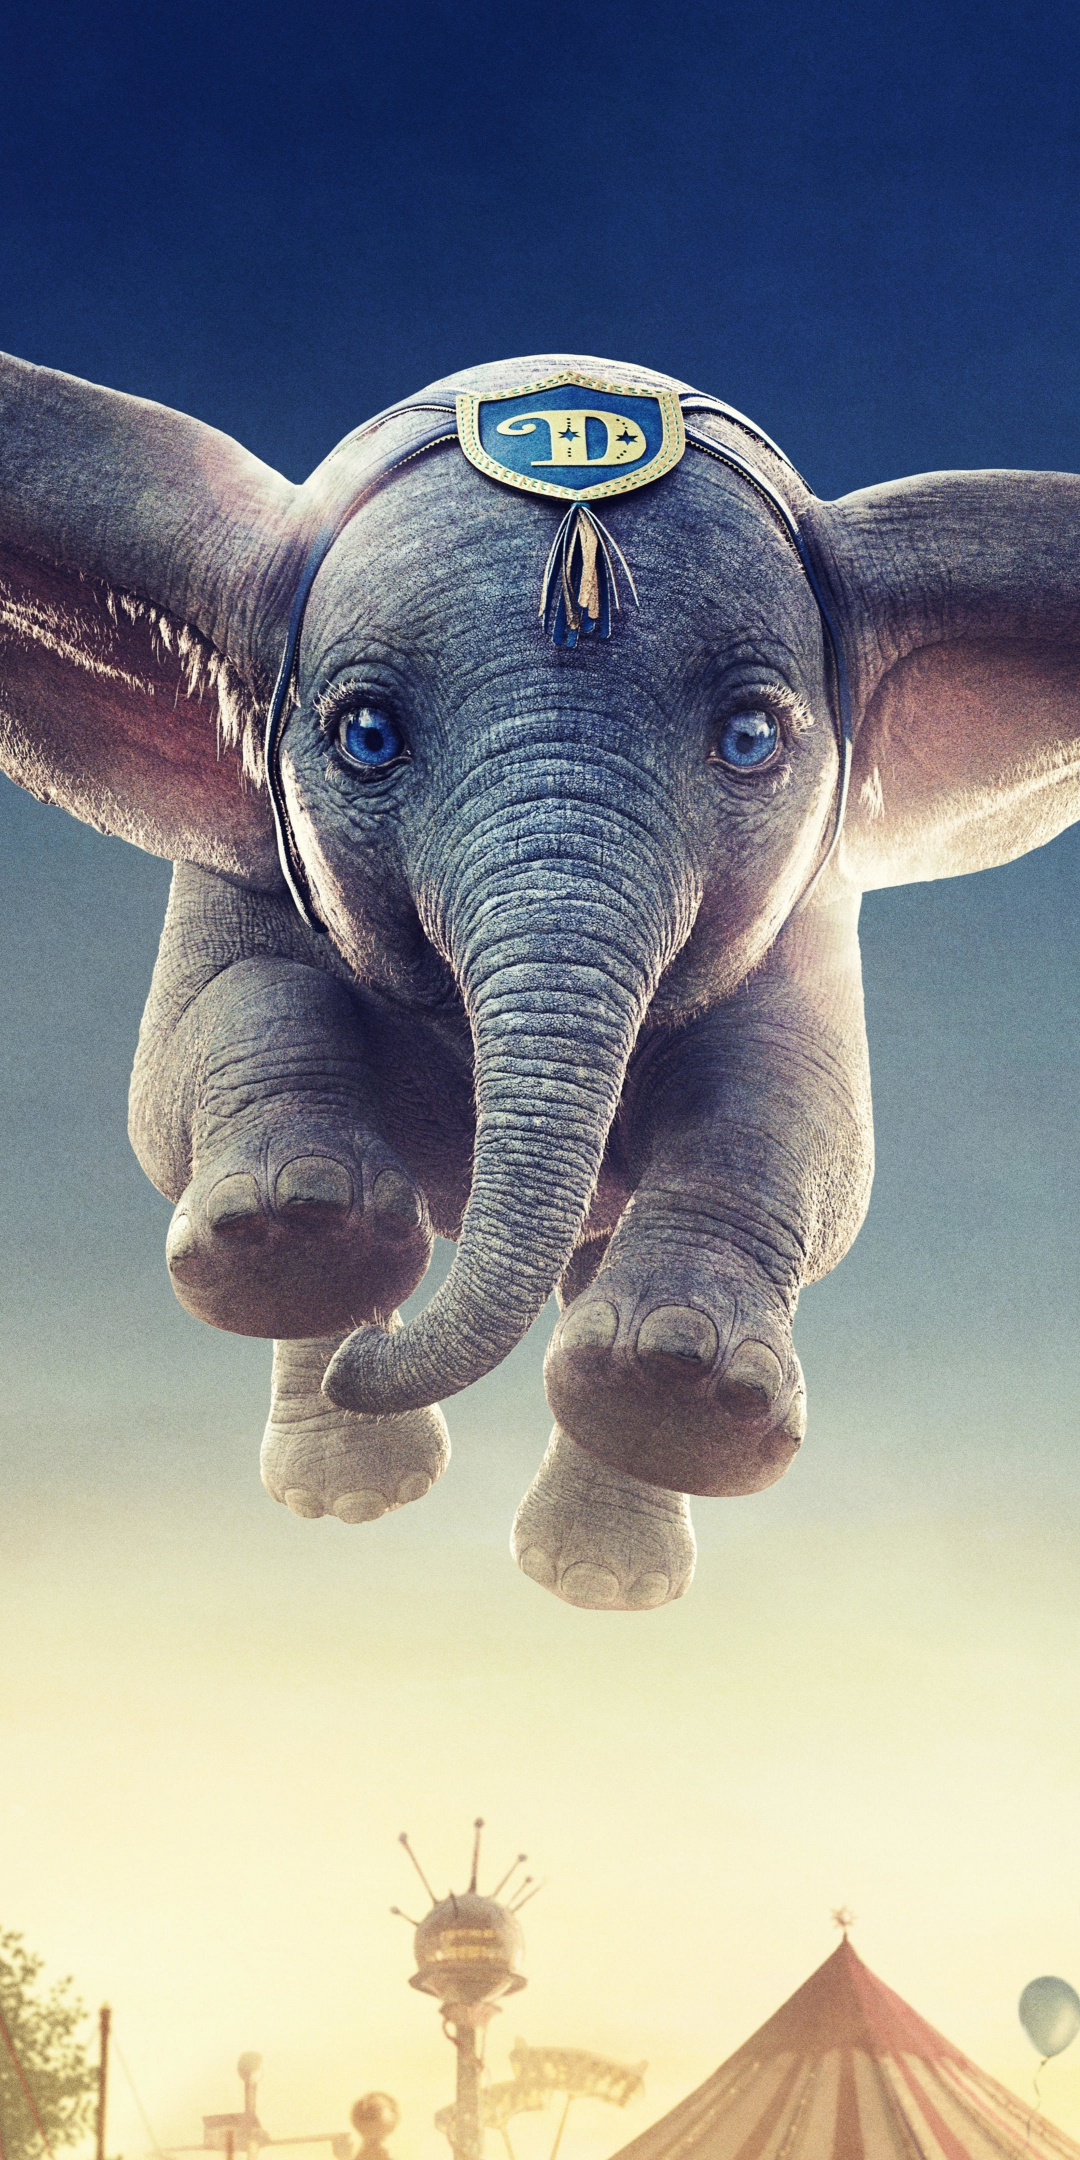 Flying elephant, Dumbo, 2019 movie, 1080x2160 wallpaper